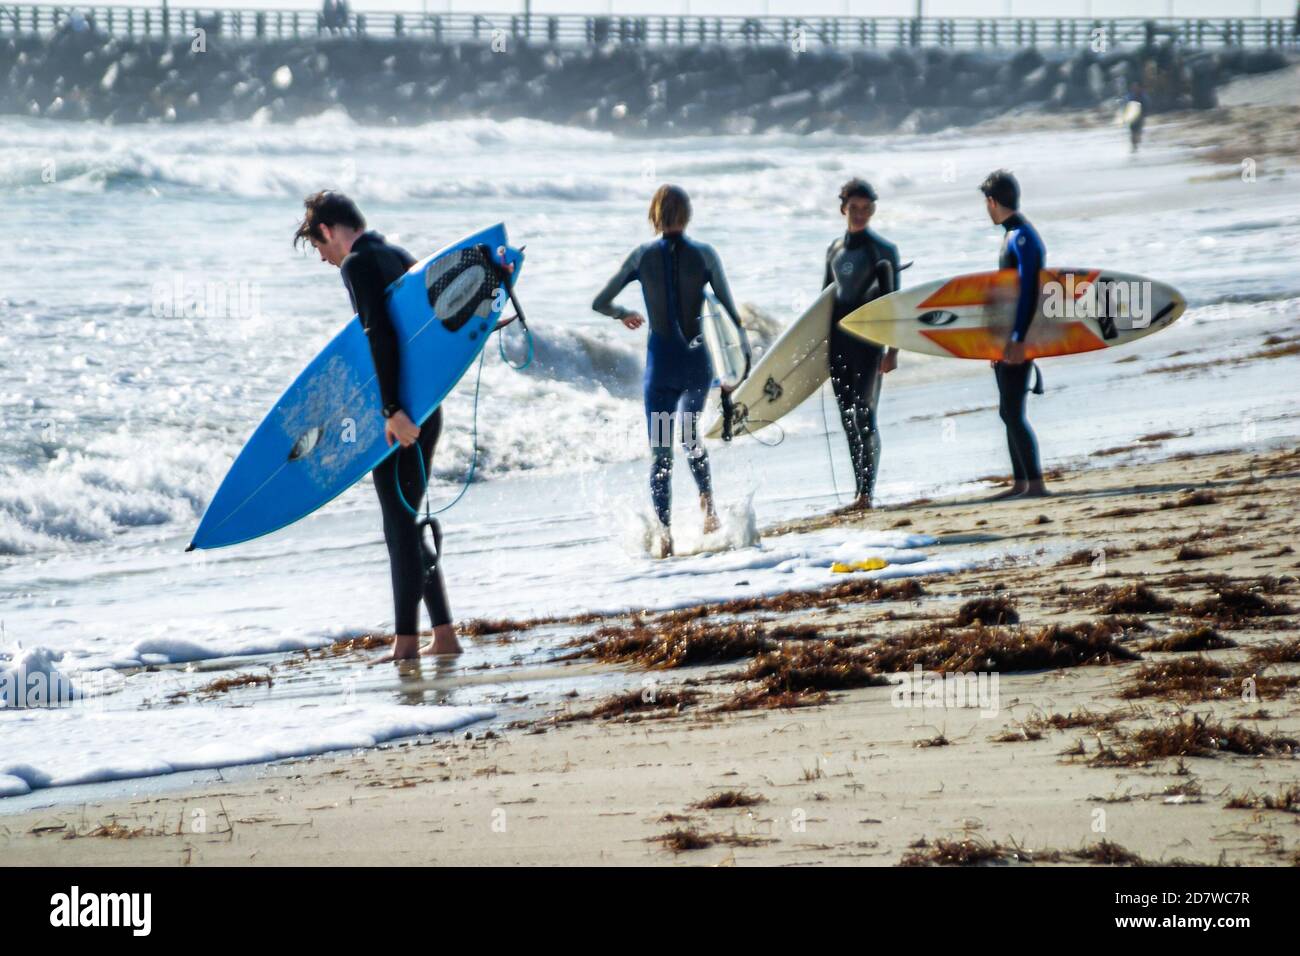 Miami Beach, Florida, Küste am Atlantischen Ozean, Surfer Surfer Surfboard Surfboards, Teenager Teenager Teenager Teenager männlich junge Jungen surfen Wellen, Stockfoto